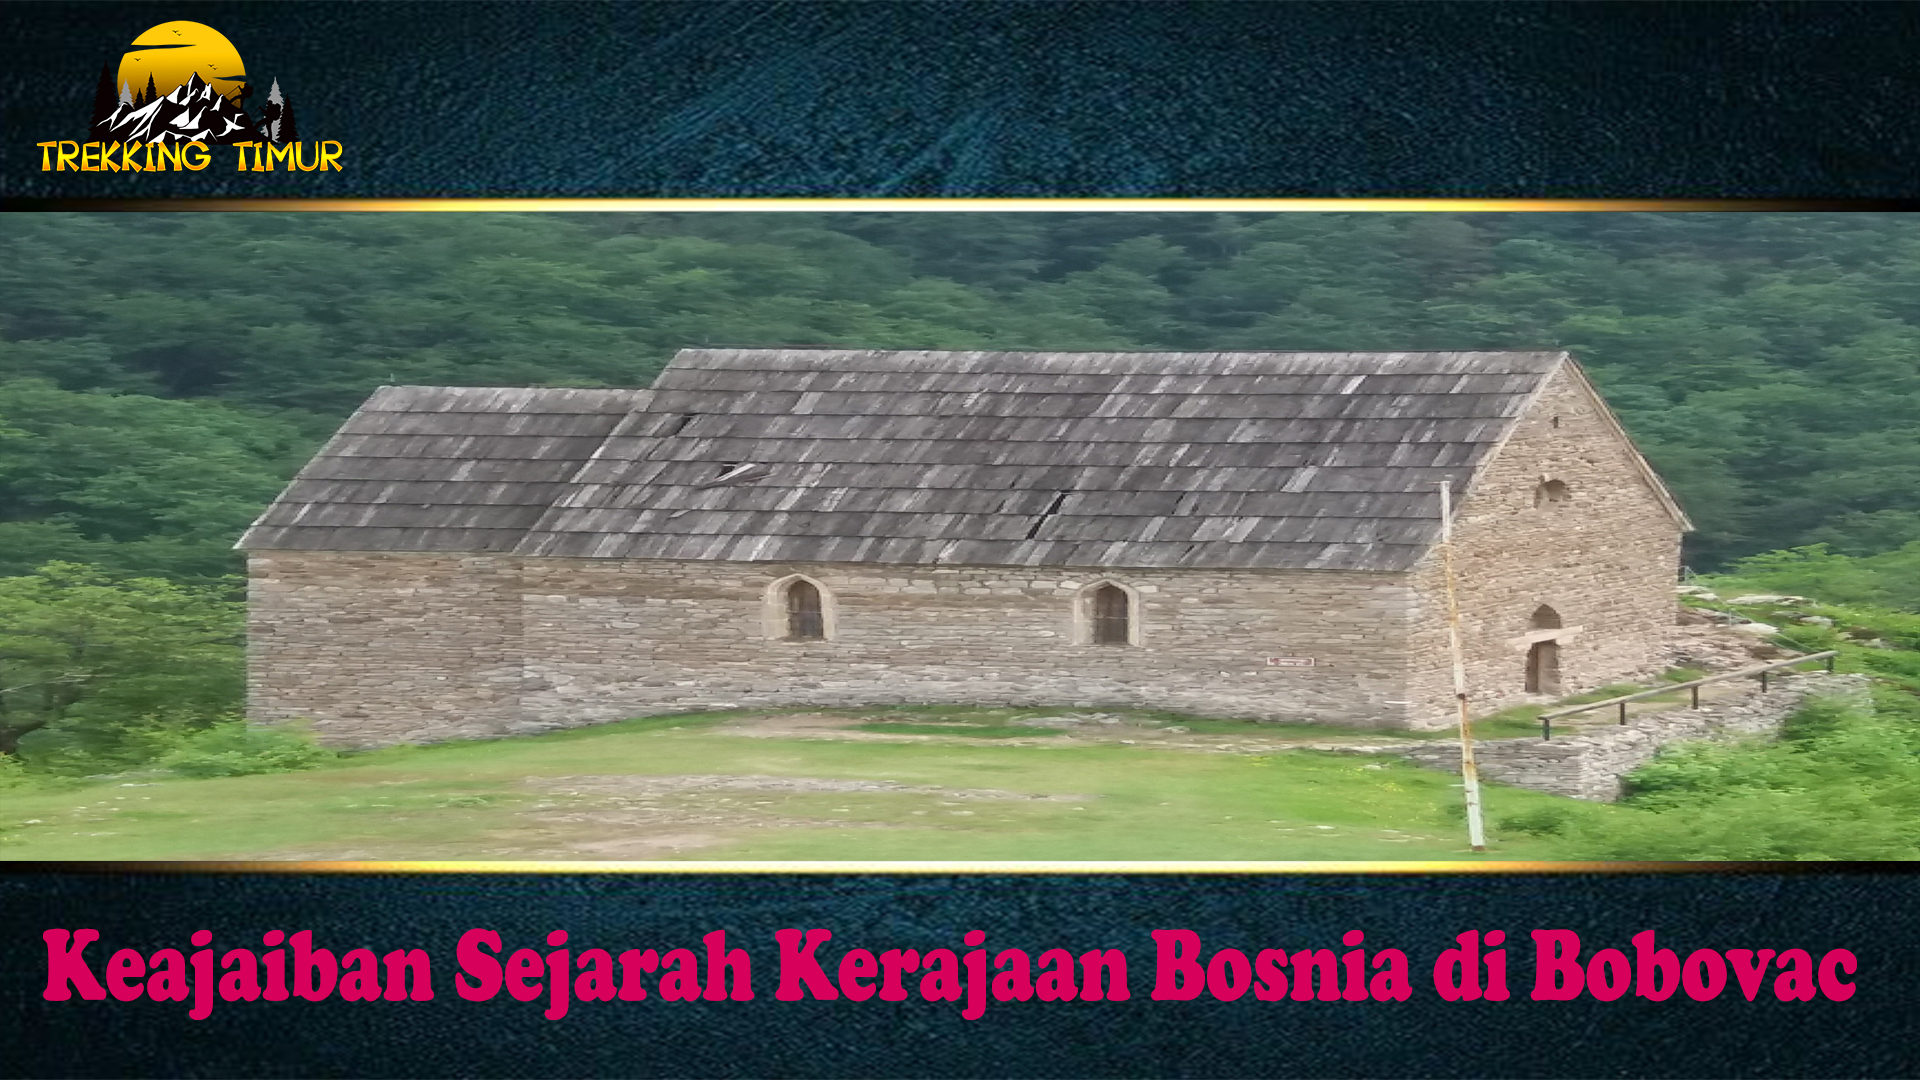 Keajaiban Sejarah Kerajaan Bosnia di Bobovac